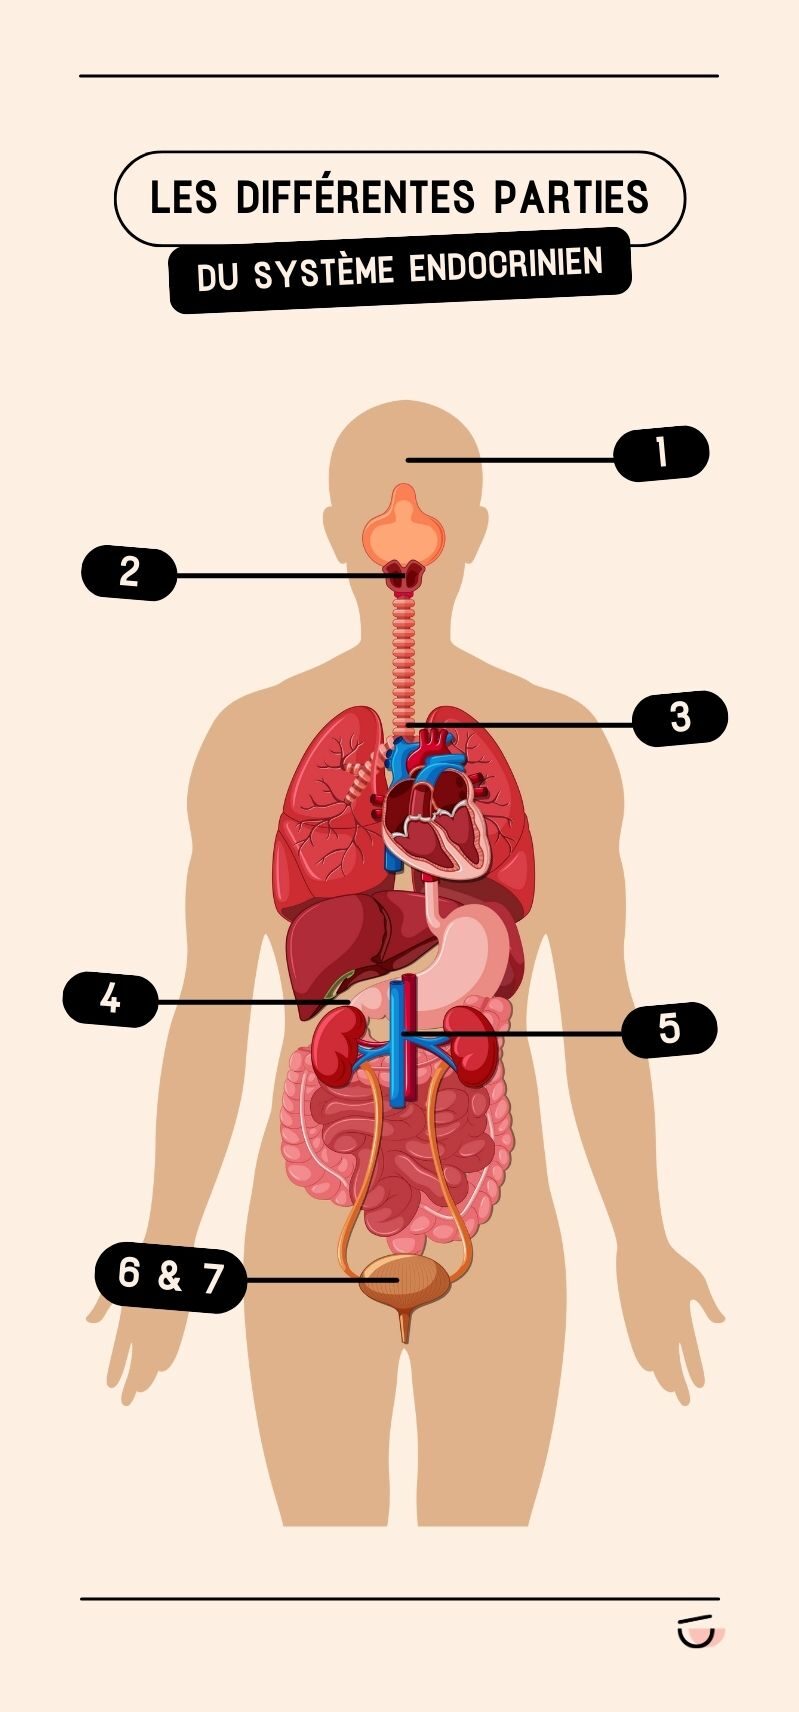 Les différentes parties du système endocrinien dans le corps humain